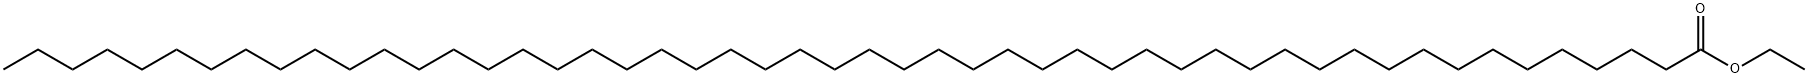 ペンタコンタン酸エチル 化学構造式